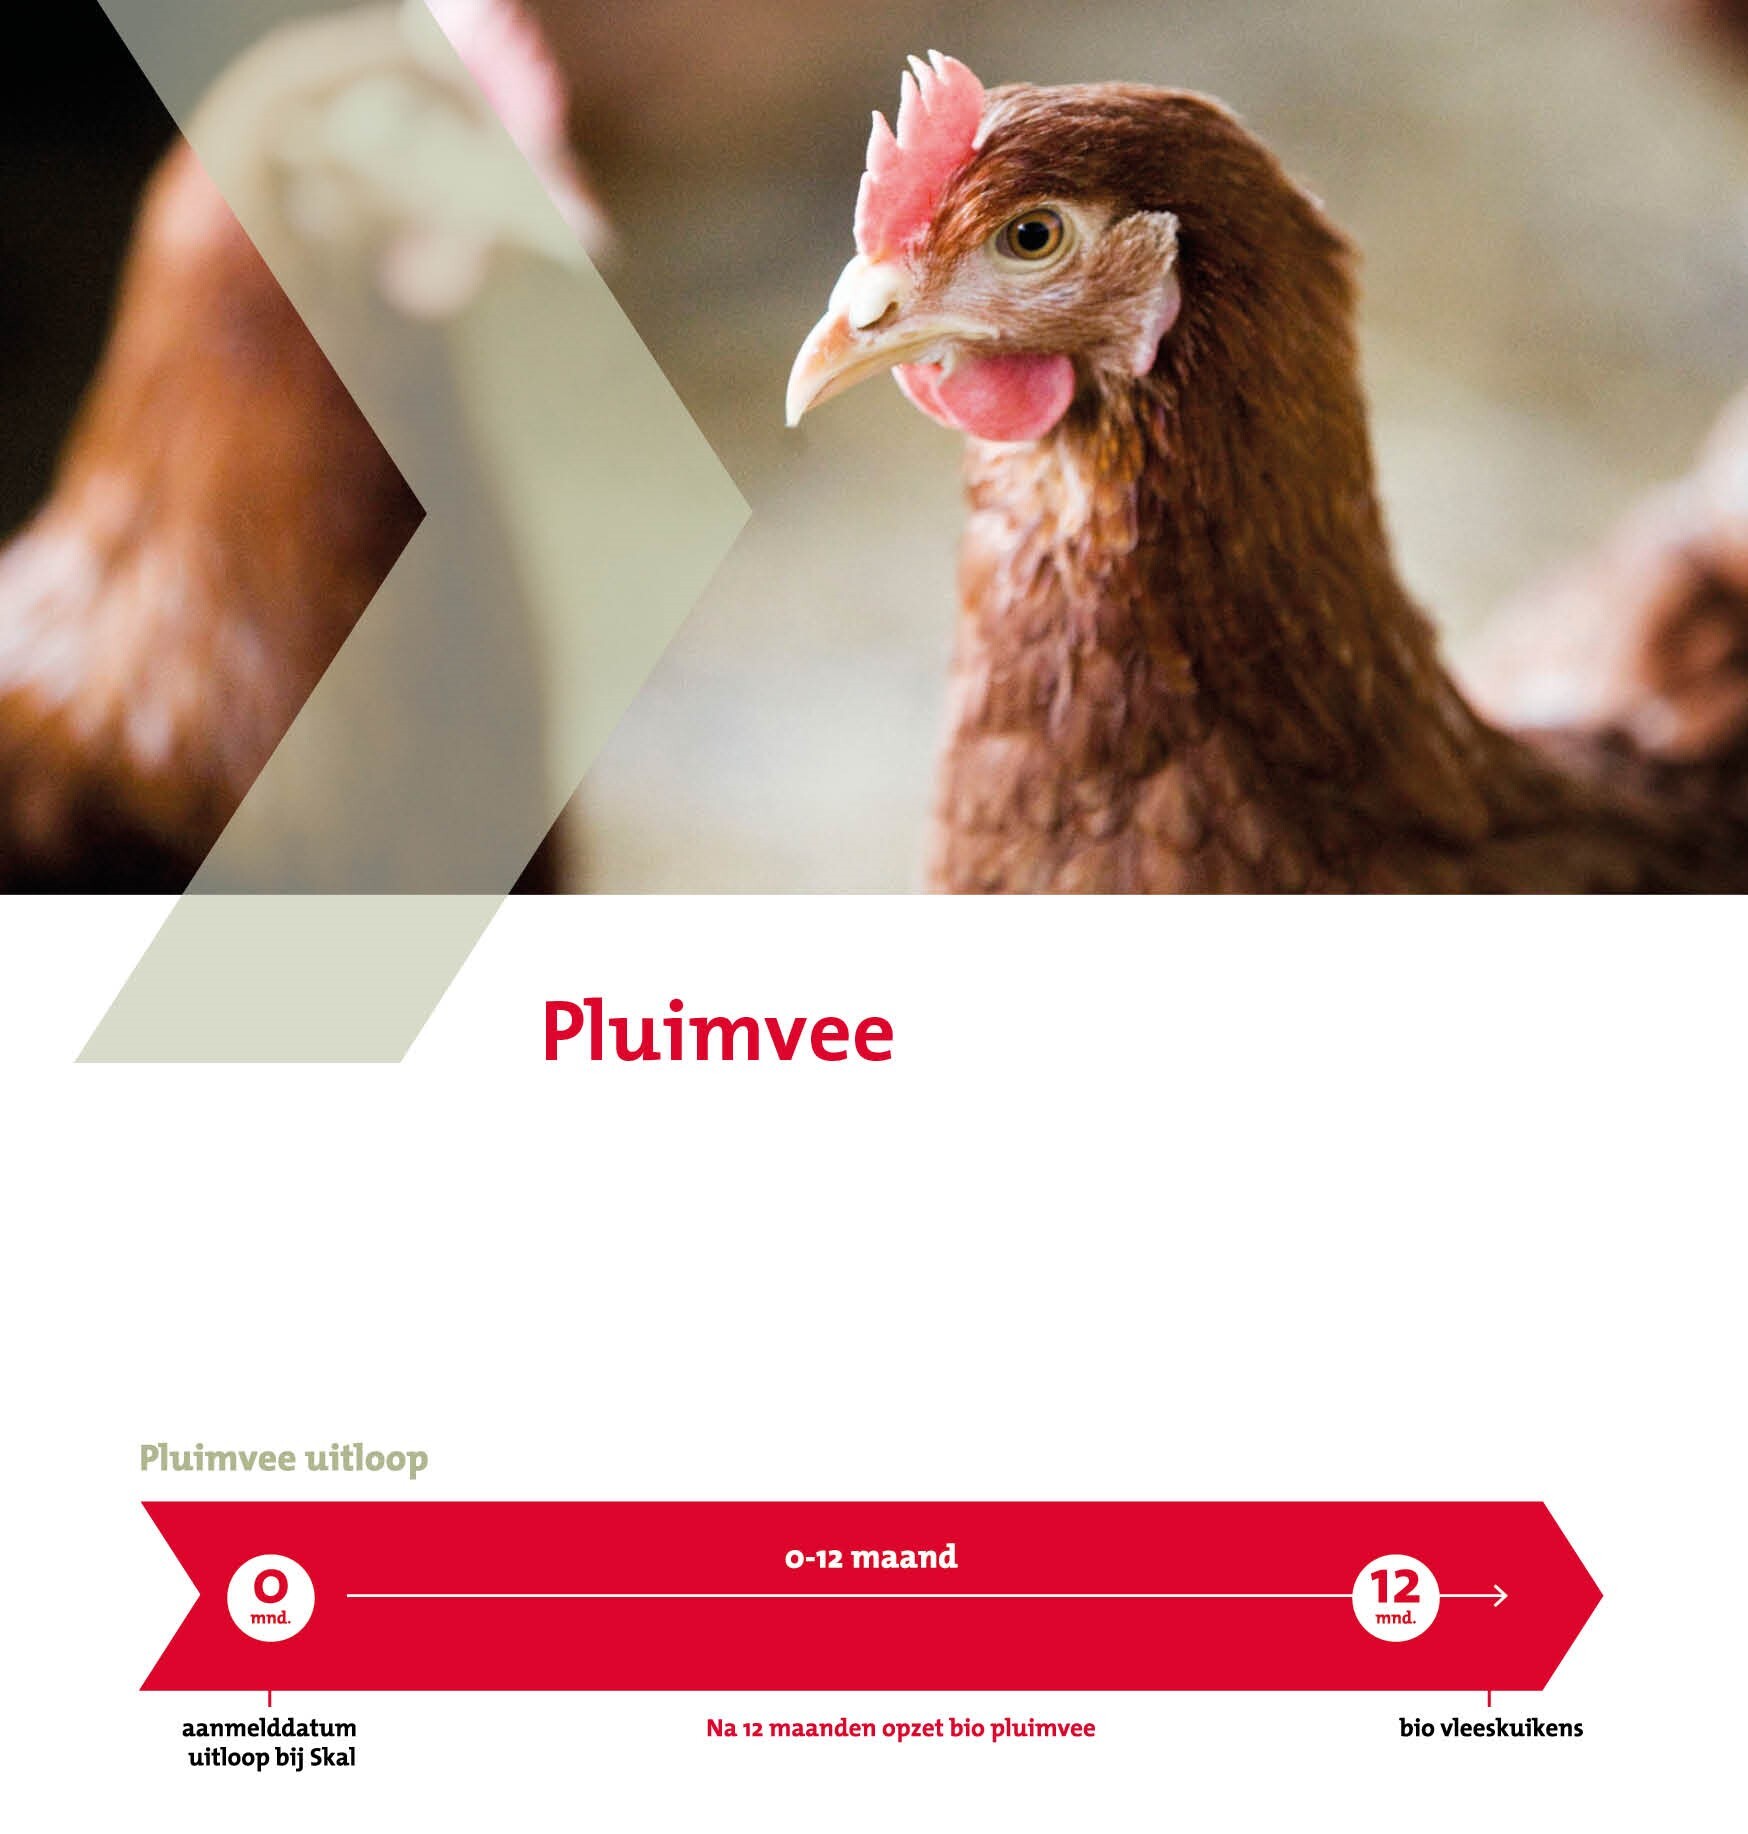 Illustratie omschakelschema pluimvee met afbeelding van 2 kippen